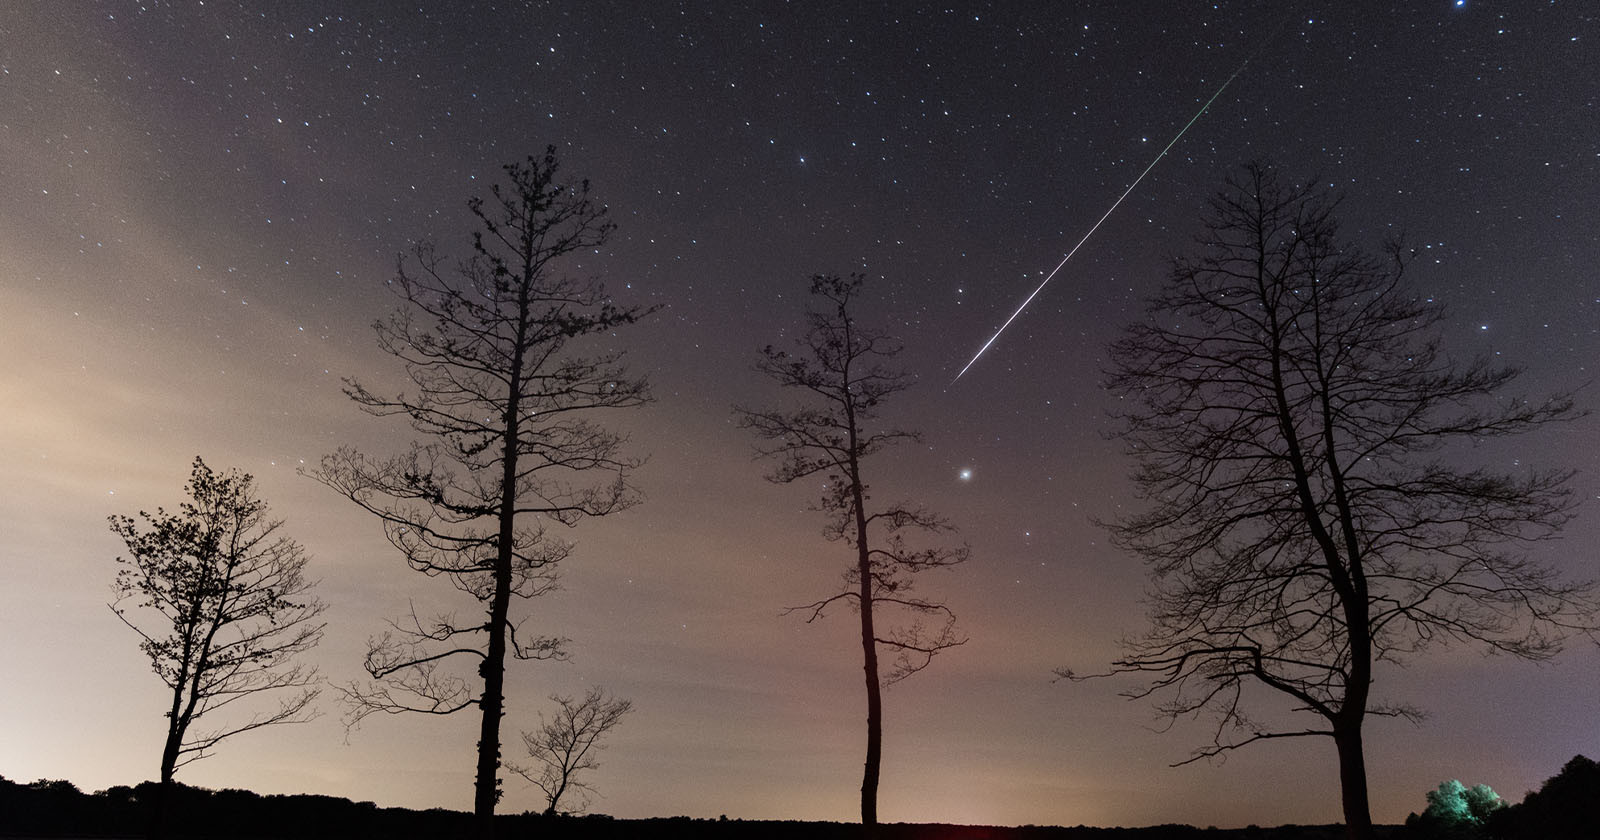  doorbell camera captures giant meteor streaking across alaskan 